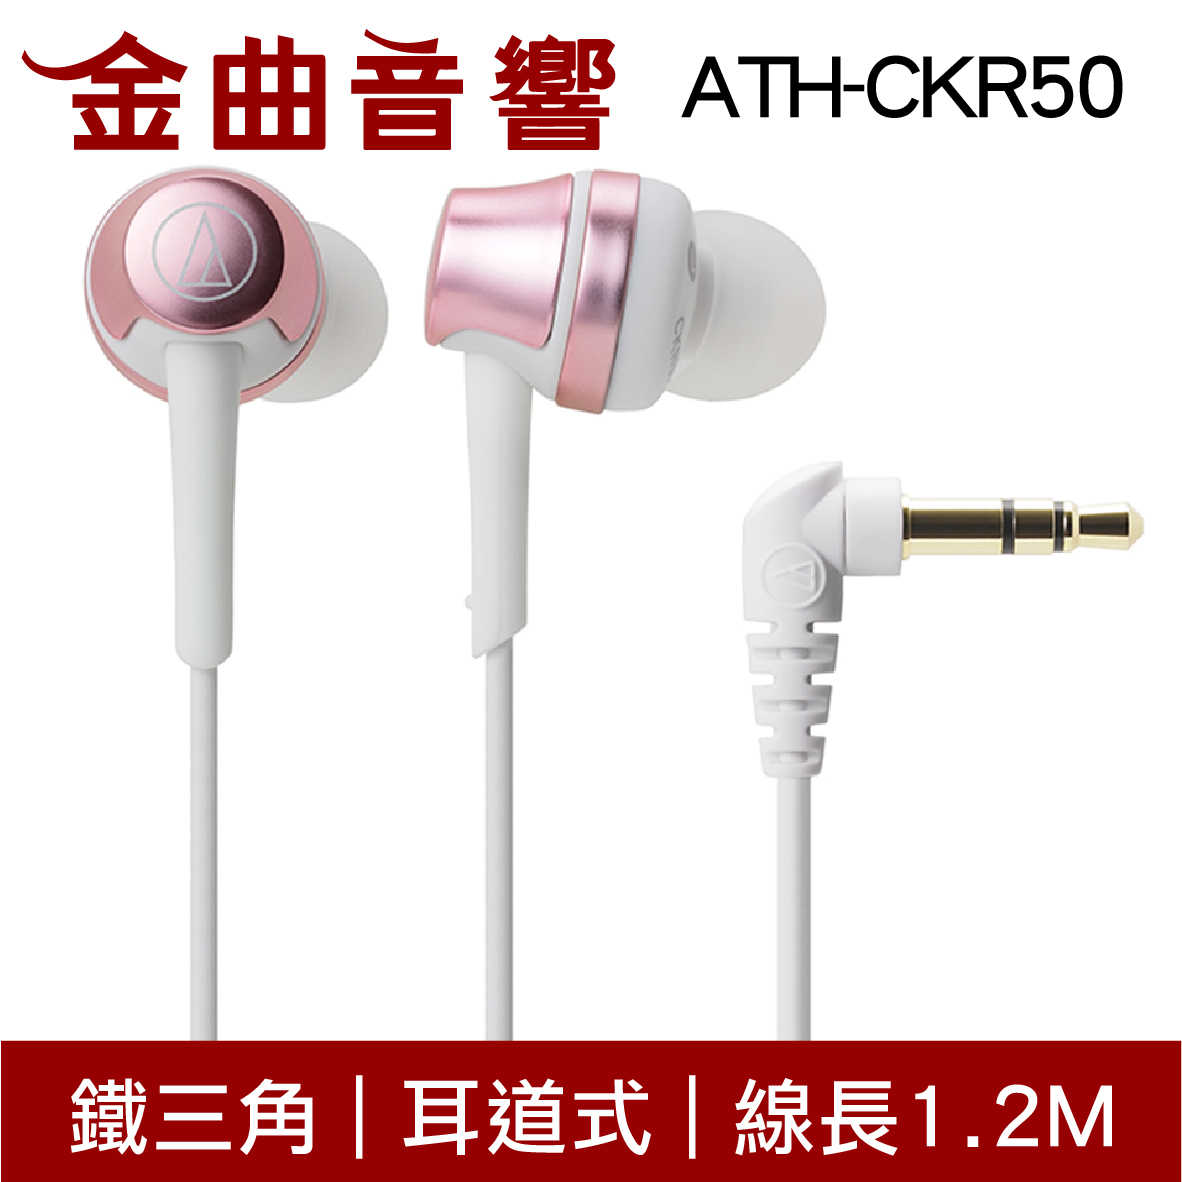 鐵三角 ATH-CKR50 多色可選 耳道式耳機 | 金曲音響